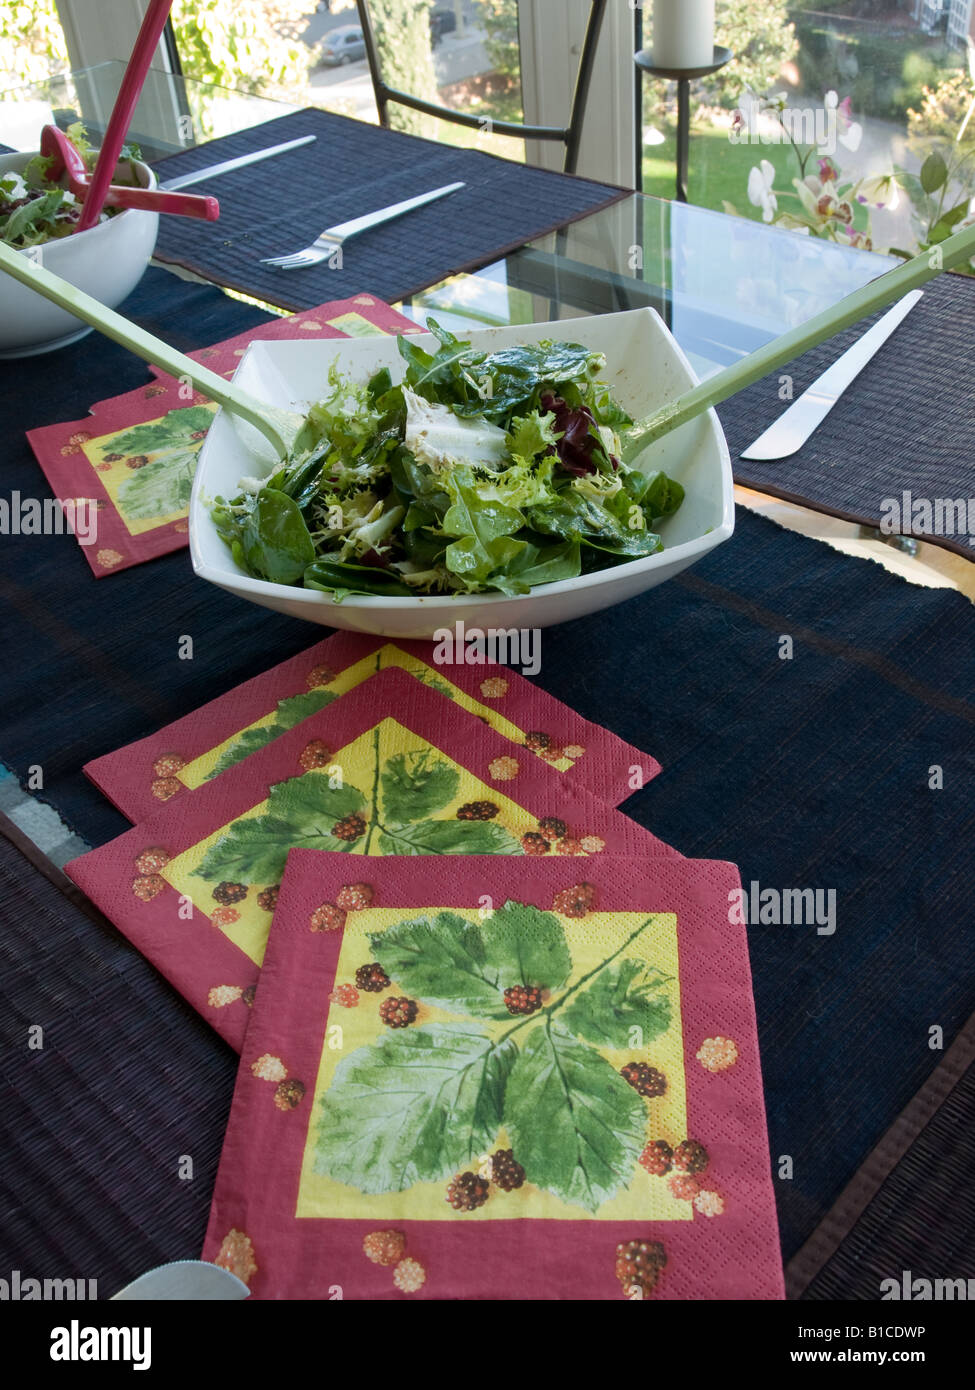 Teller mit grünem Salat auf einem Tisch bedeckt mit bunten Servietten Stockfoto